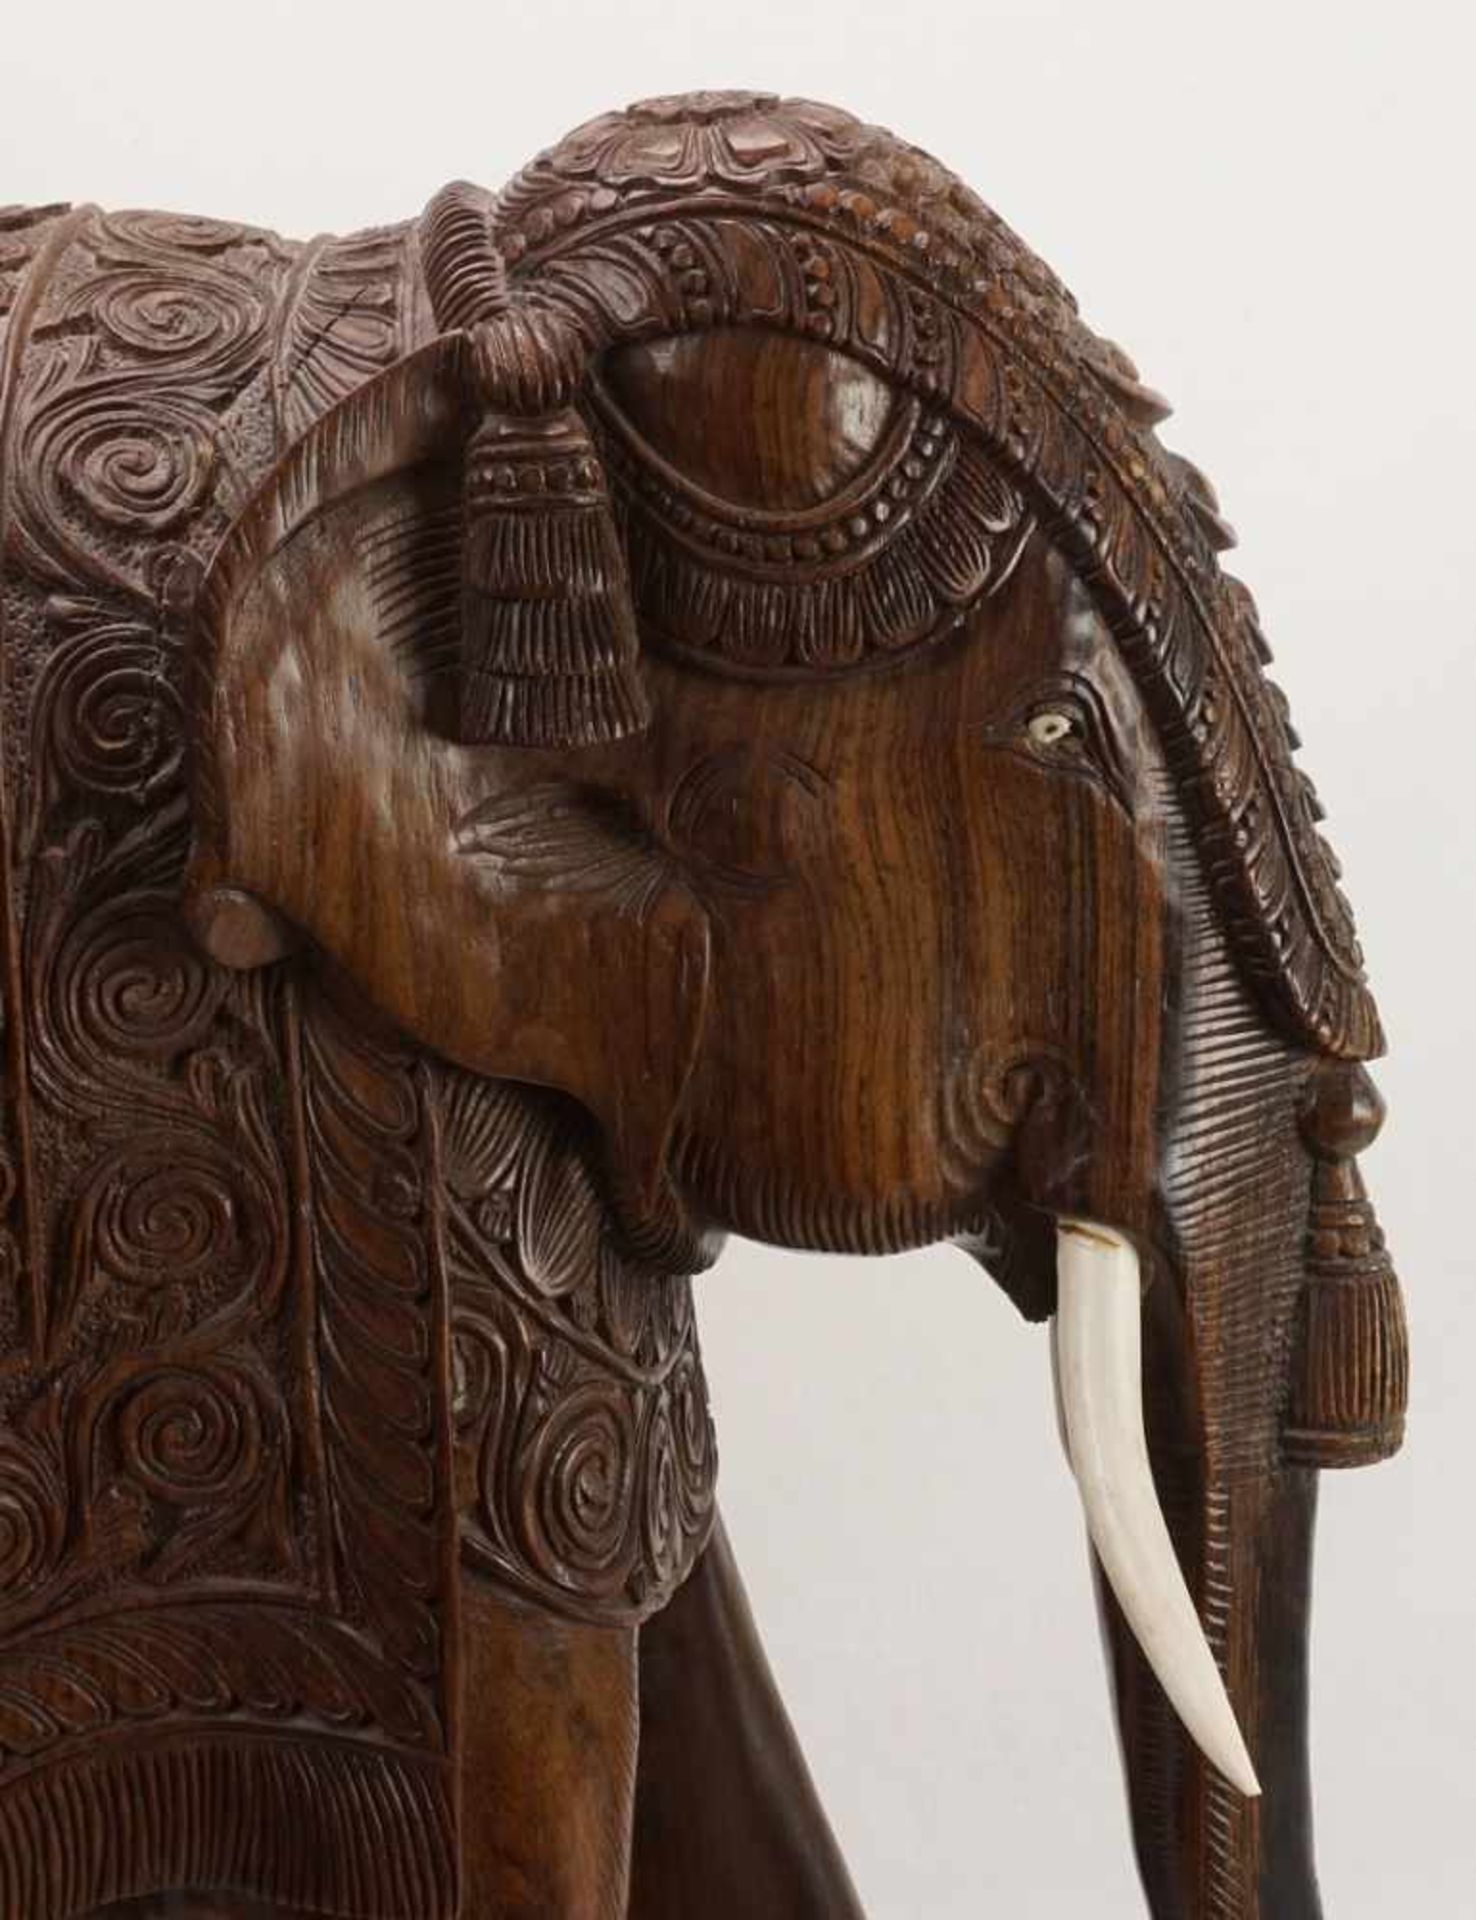 Großer Elefant, Indien, 20. Jh.Palisander, prächtig ausgeschmückter Elefant mit Stoßzähnen aus Bein, - Bild 6 aus 6